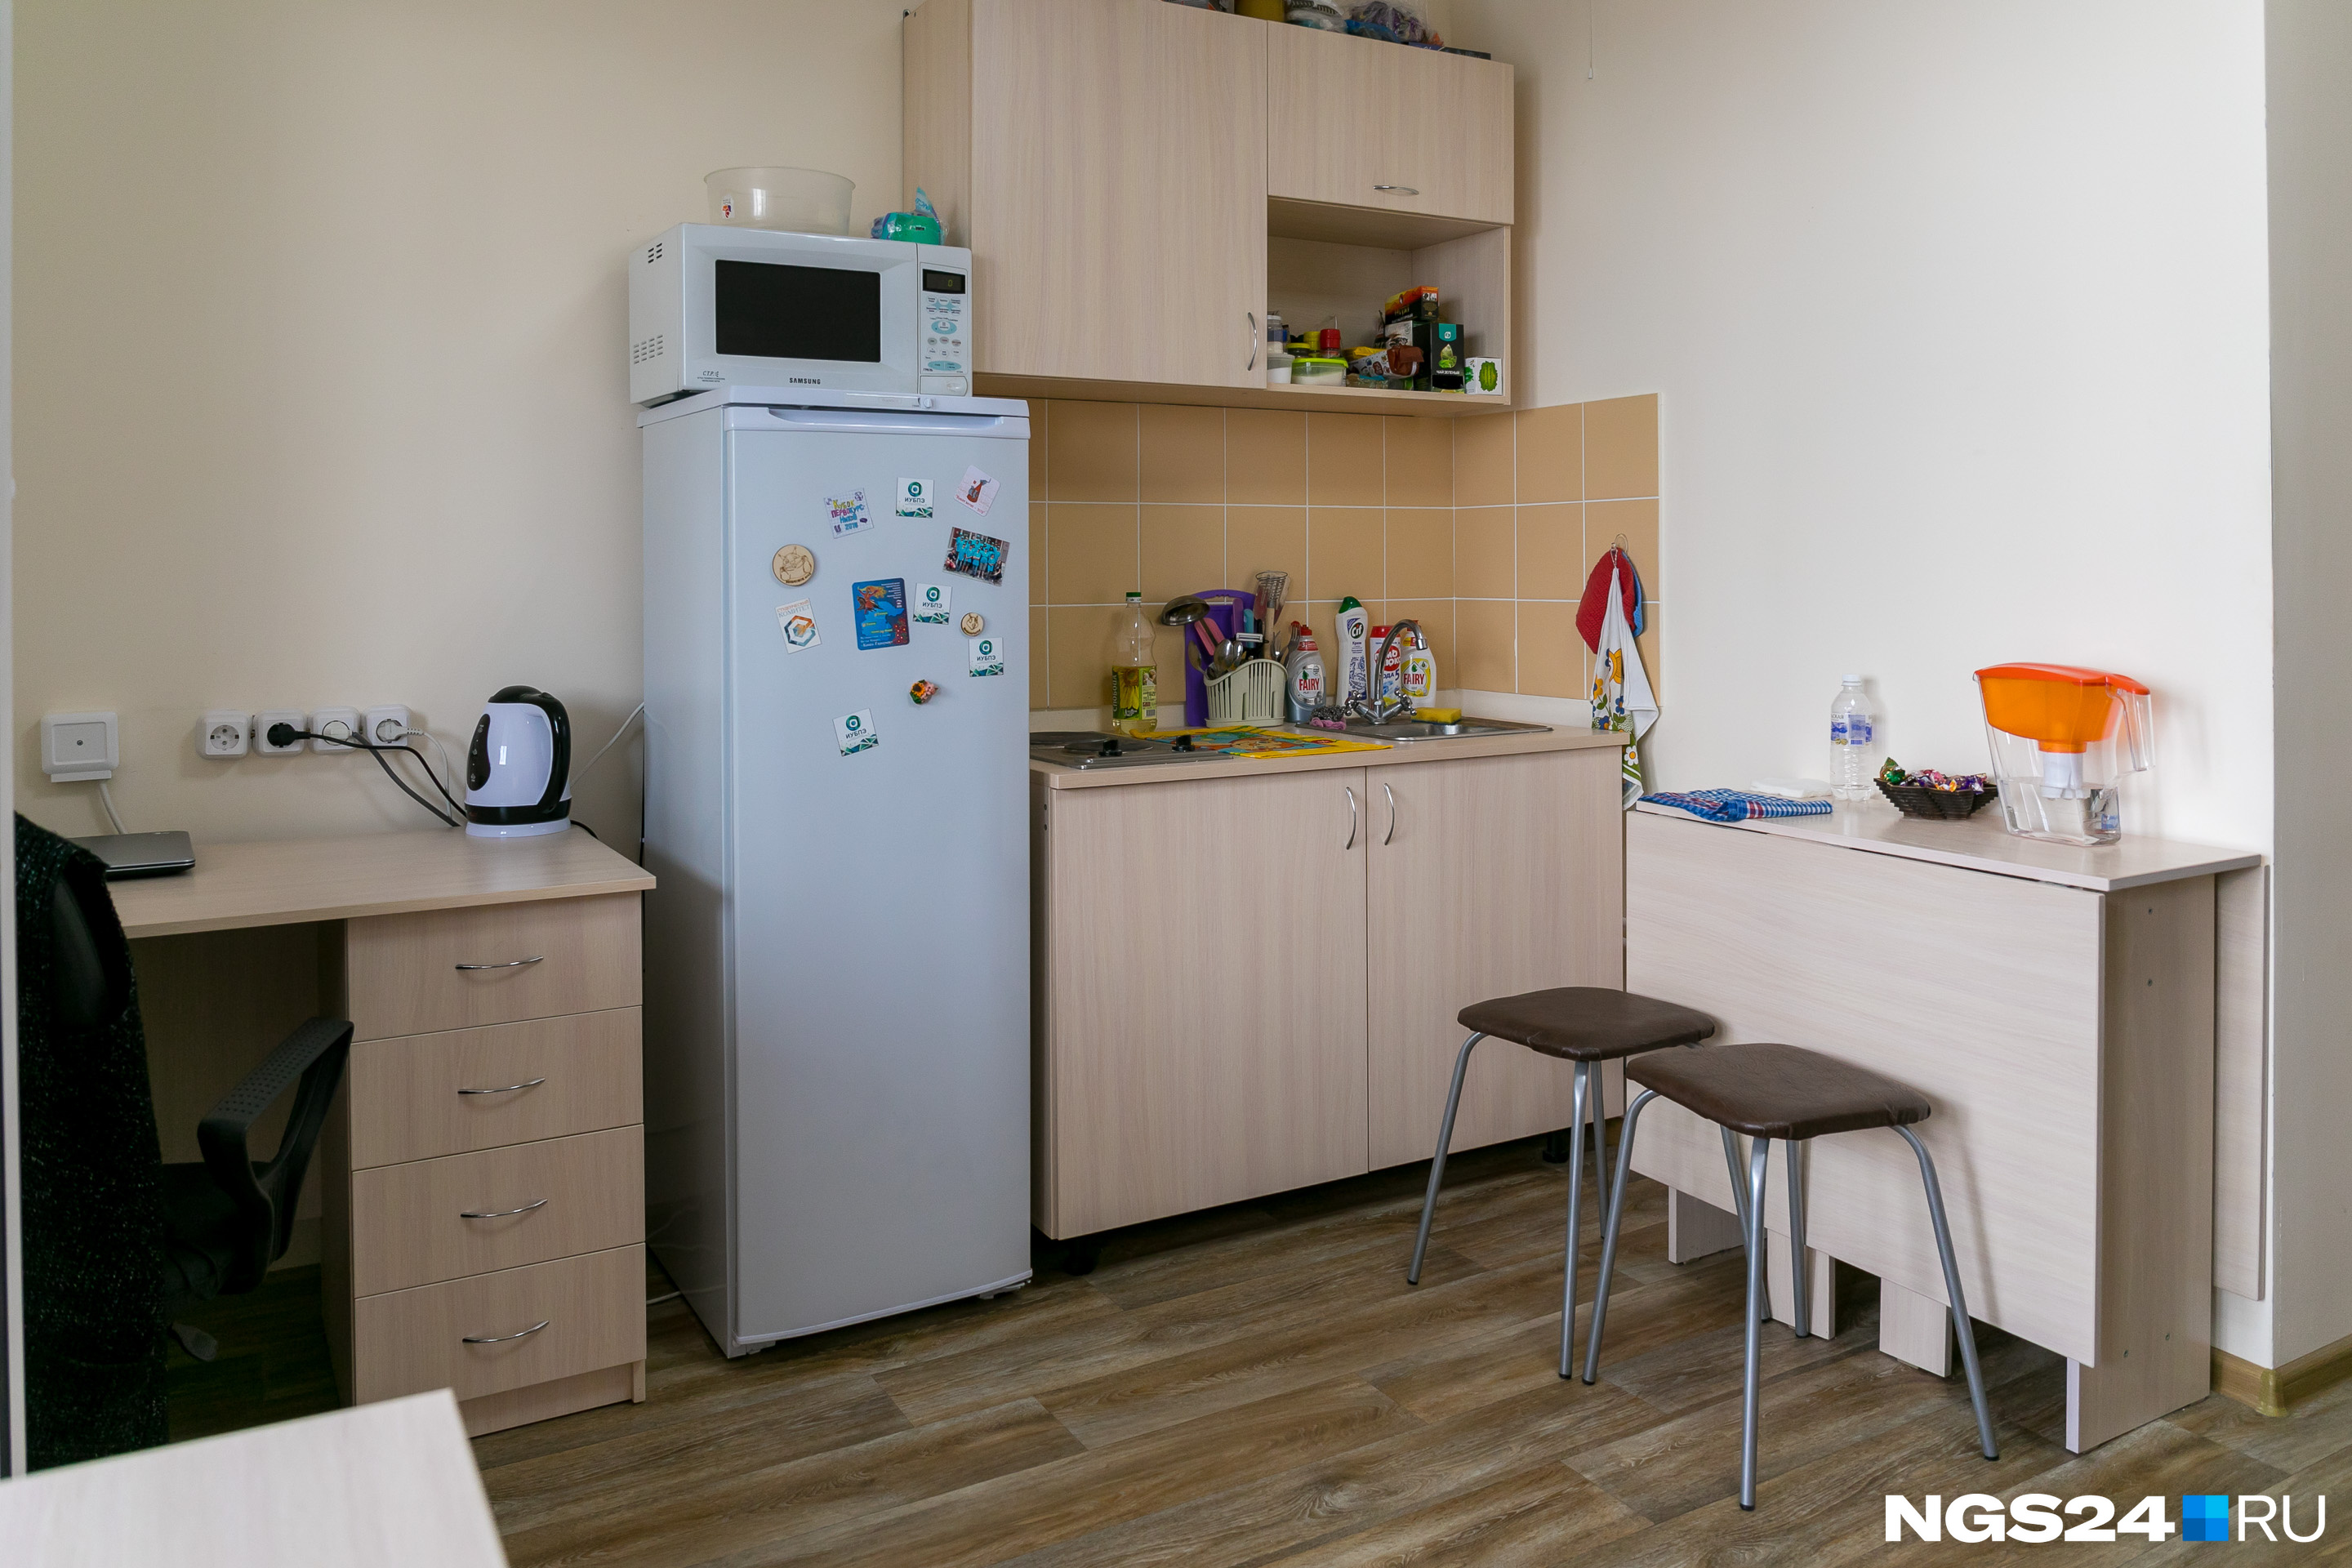 Студенты живут в студиях — кухня расположена в той же комнате, что и спальня